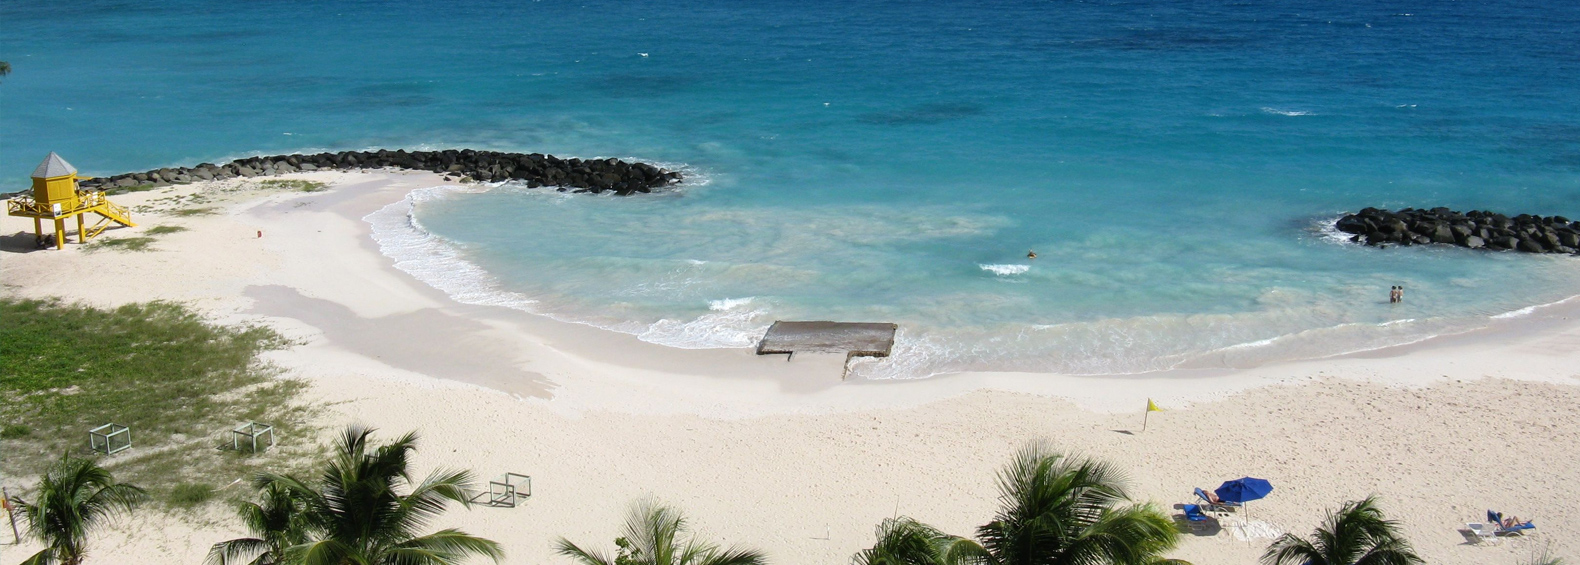 Barbados Vacation Rental Homes